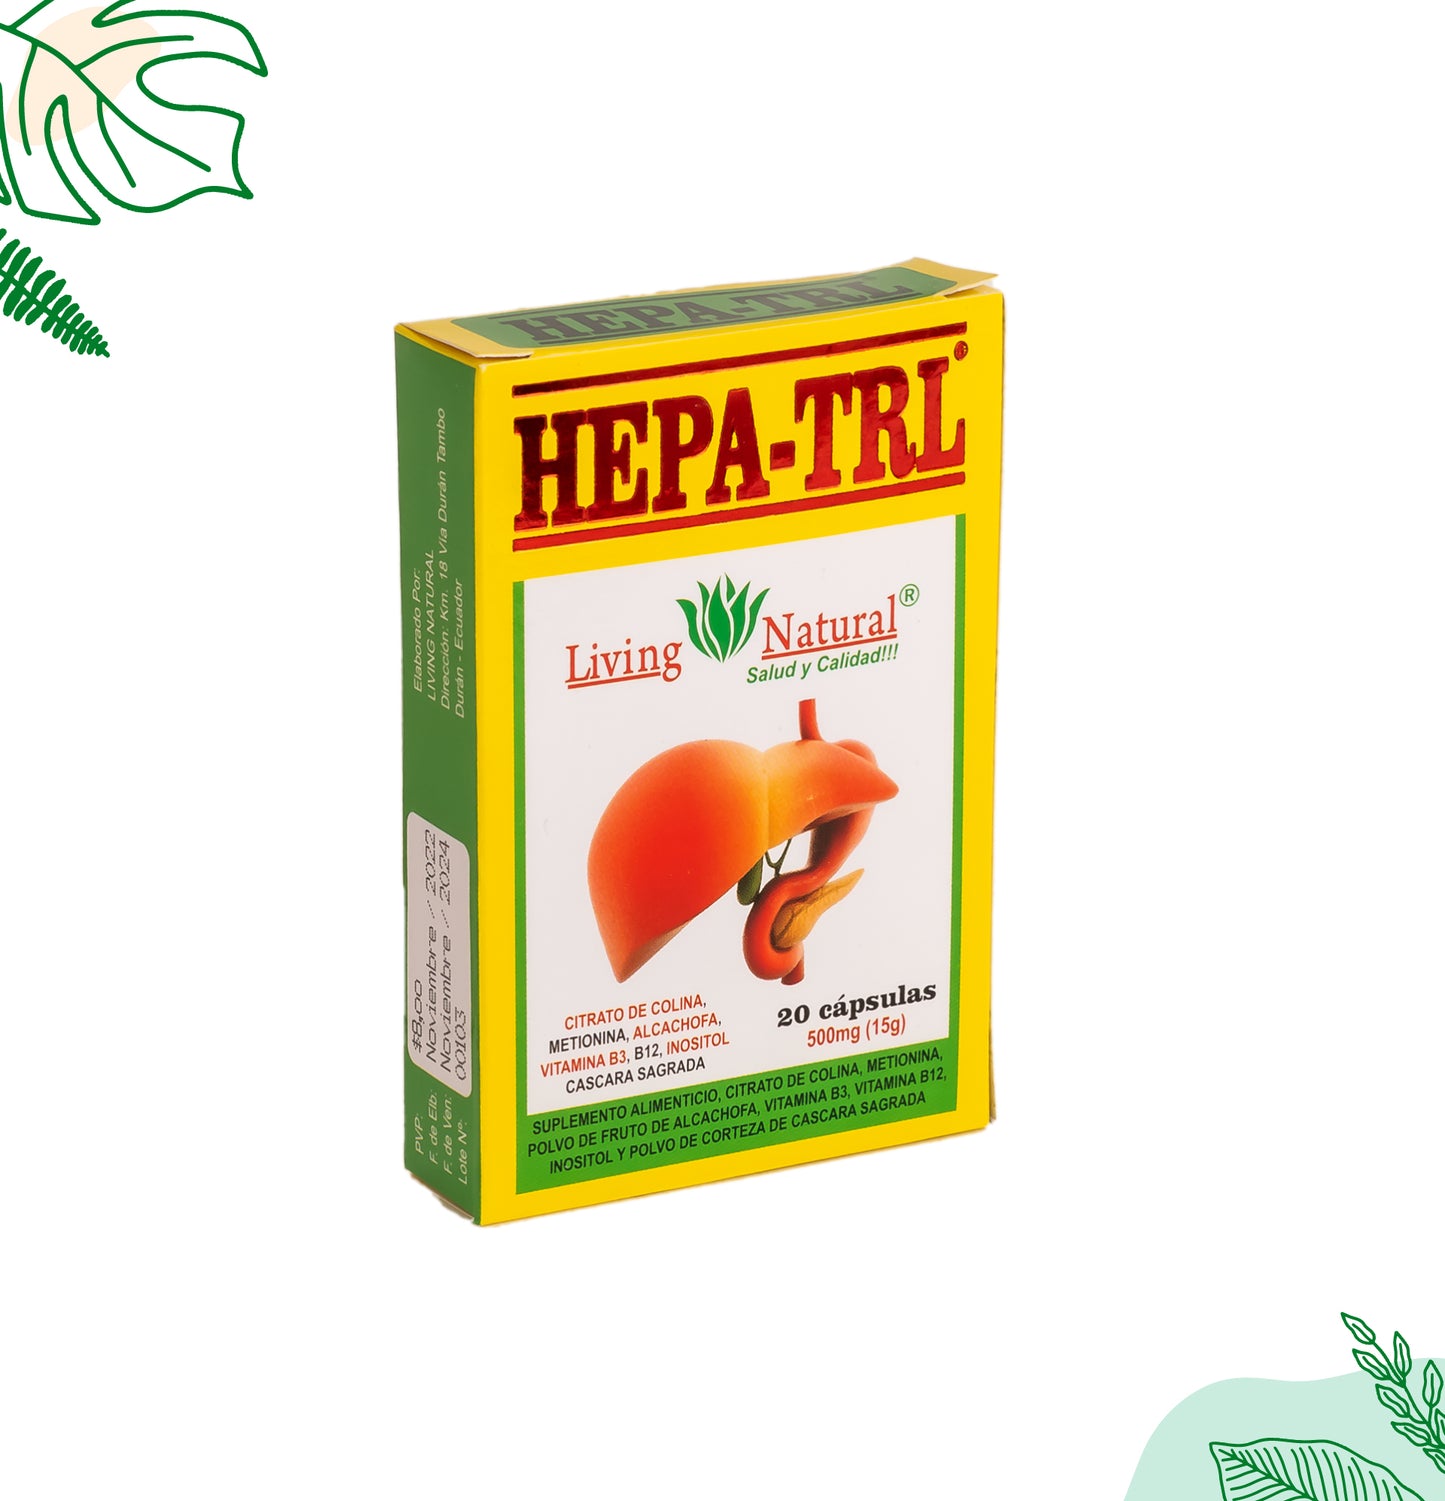 HEPATROL | 500 mg | X20